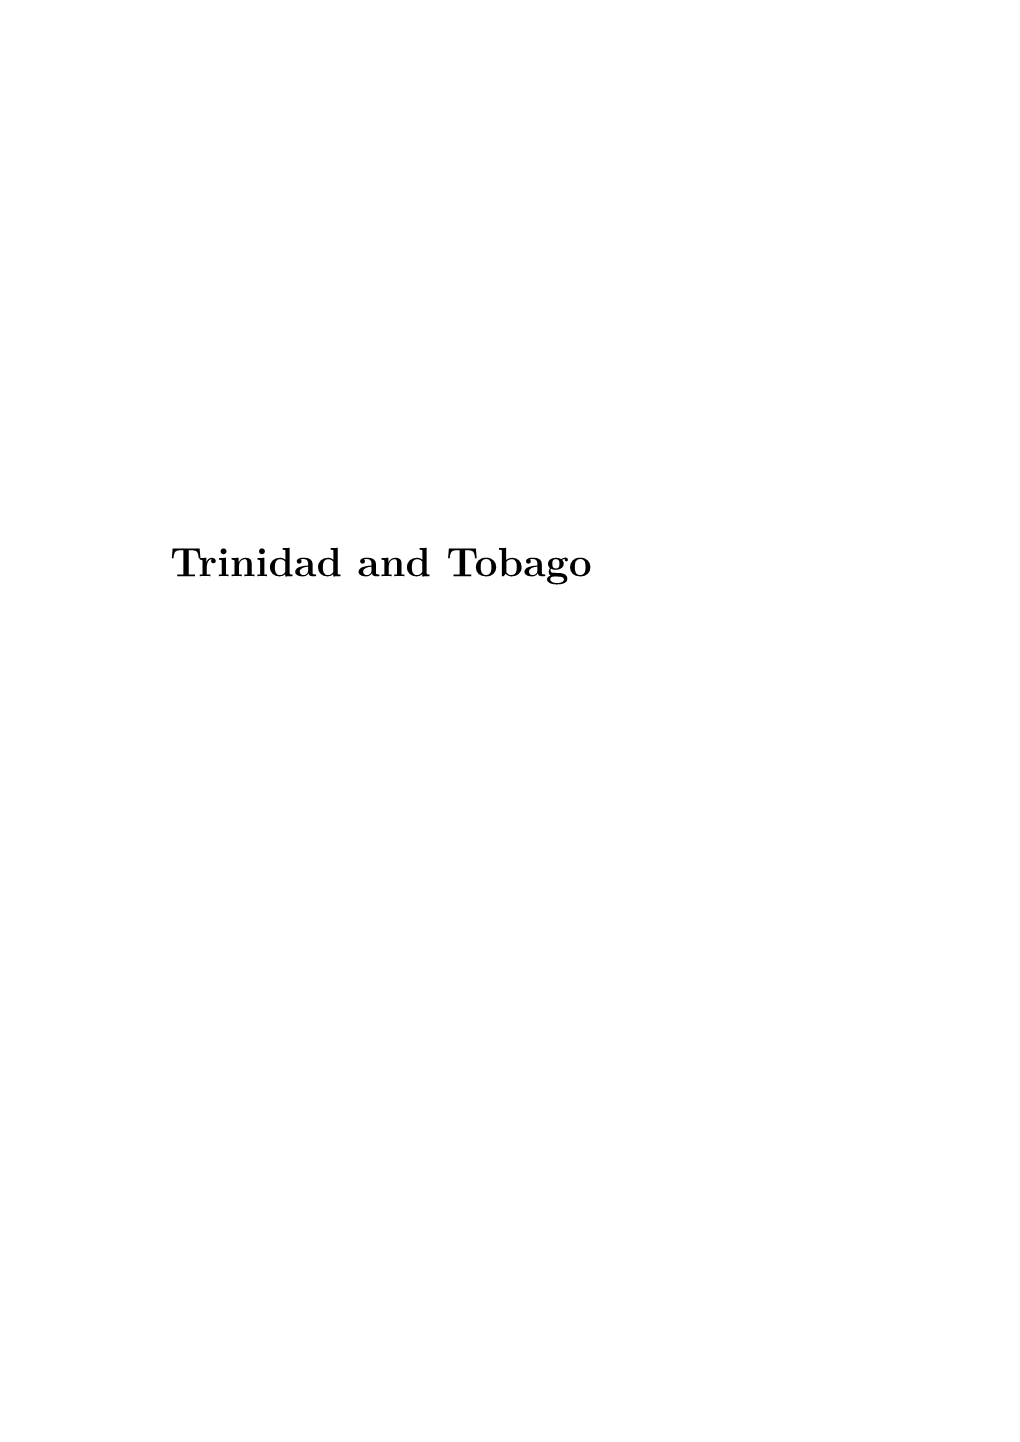 Ethnicity in Trinidad and Tobago